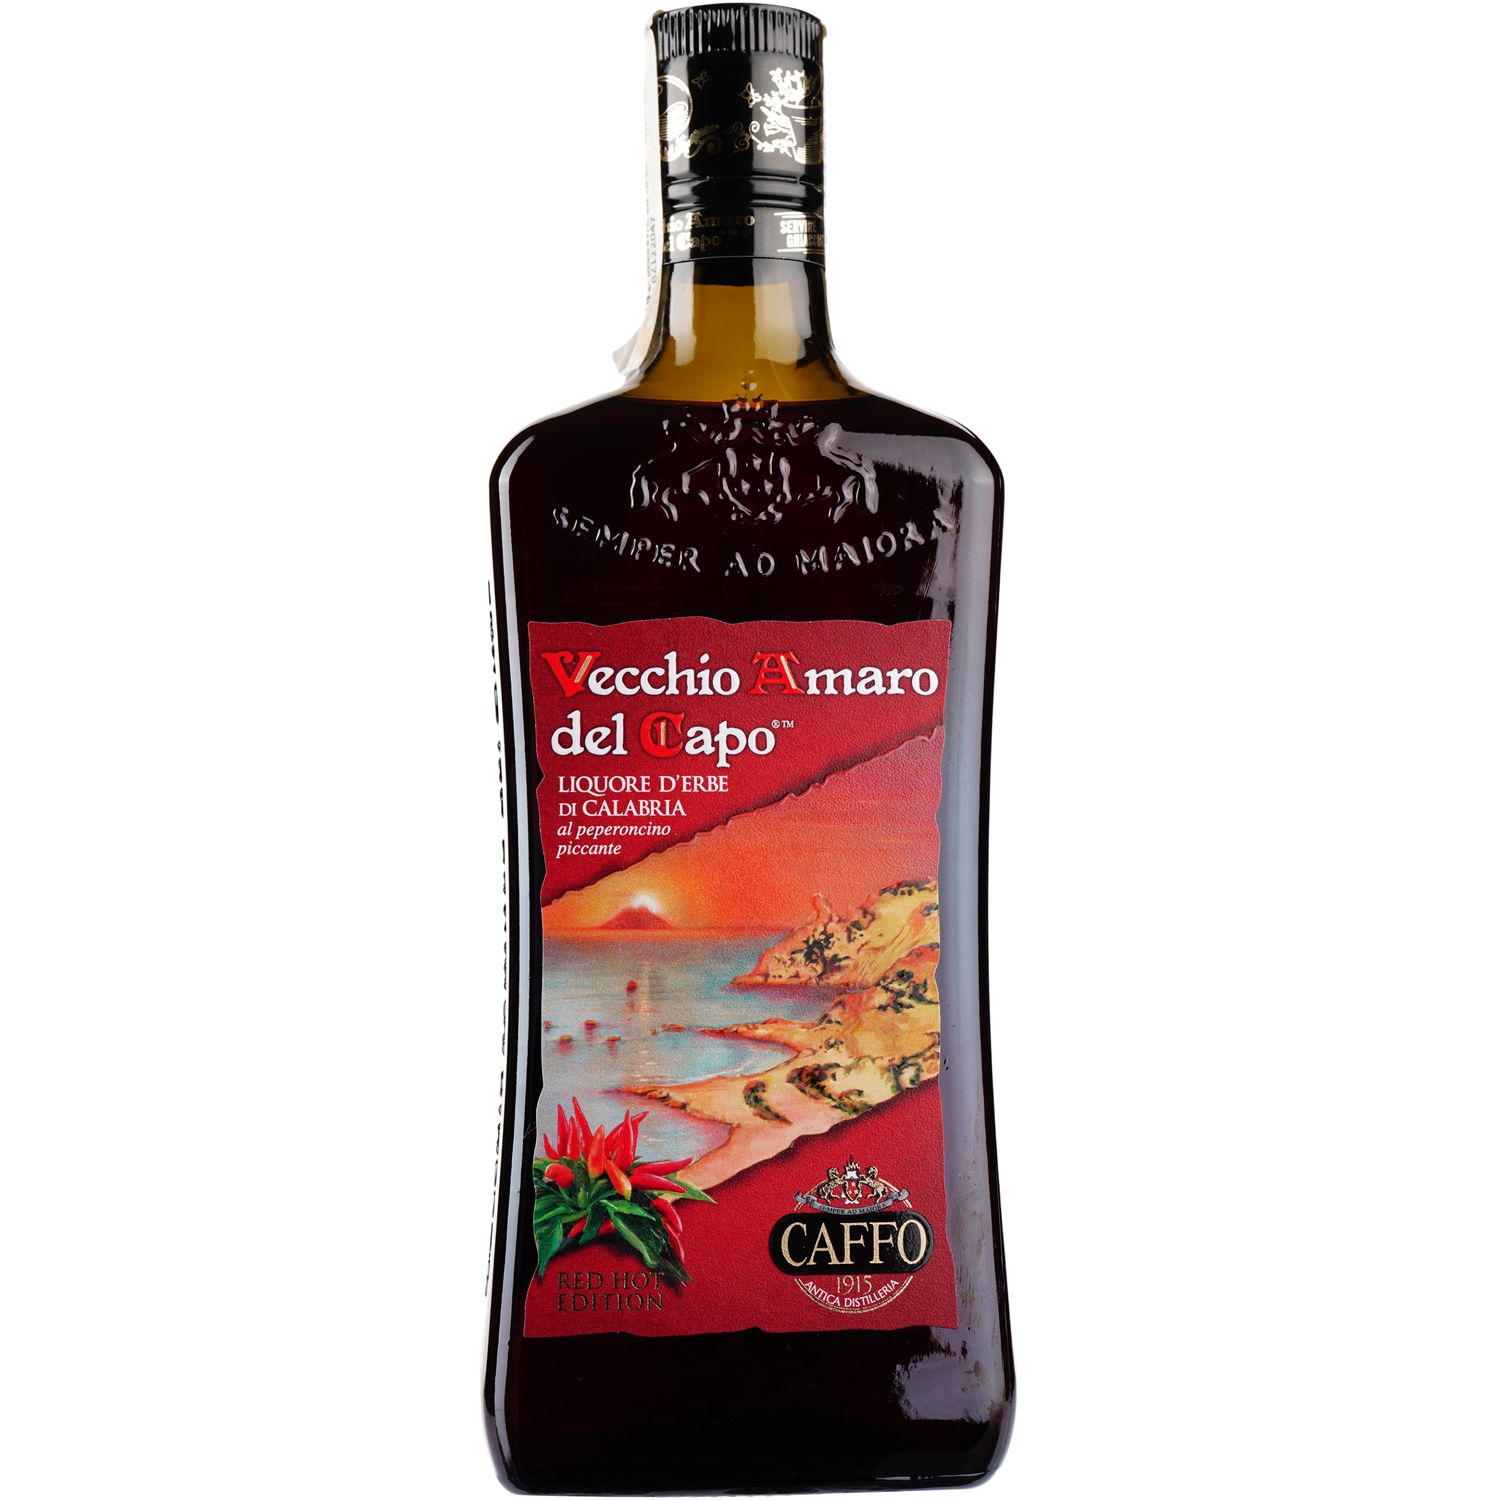 Ликер Caffo Vecchio Amaro del Capo Red Hot Edition, 35%, 0,7 л - фото 1